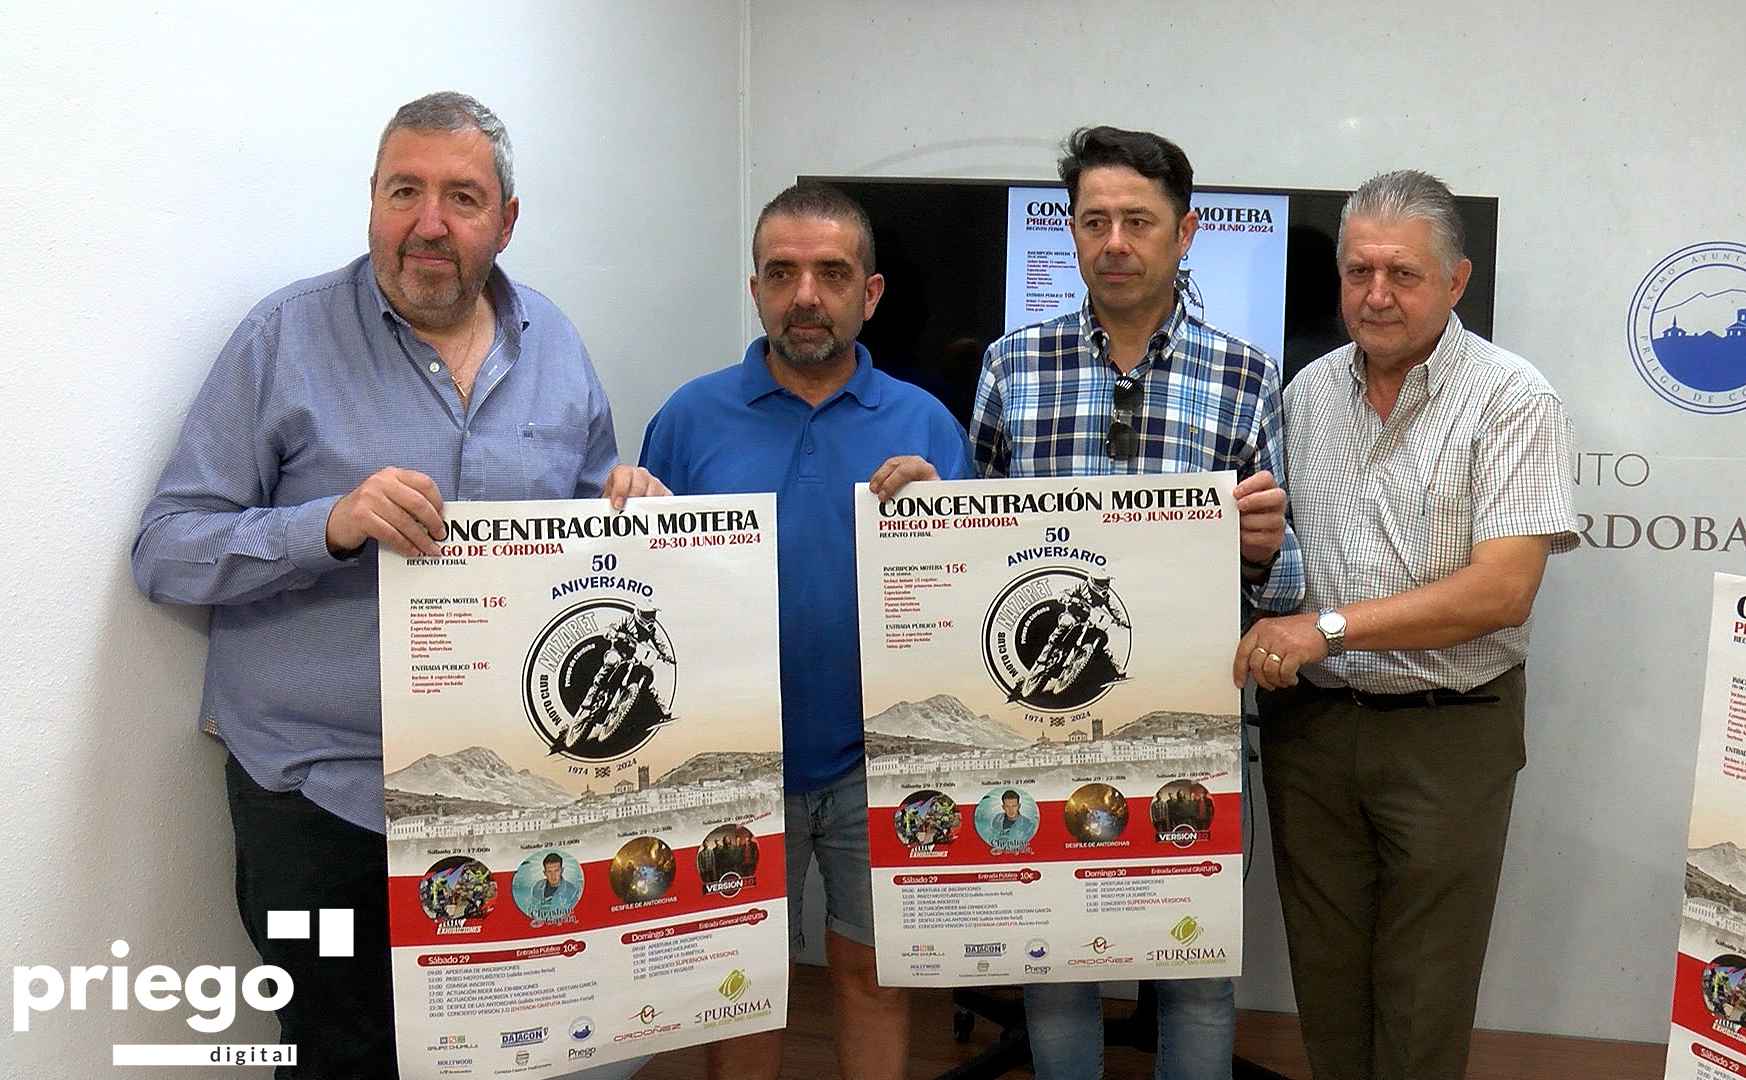 Antonio Navas, Valentín Márquez, David Pérez y José Gómez con el cartel anunciador.